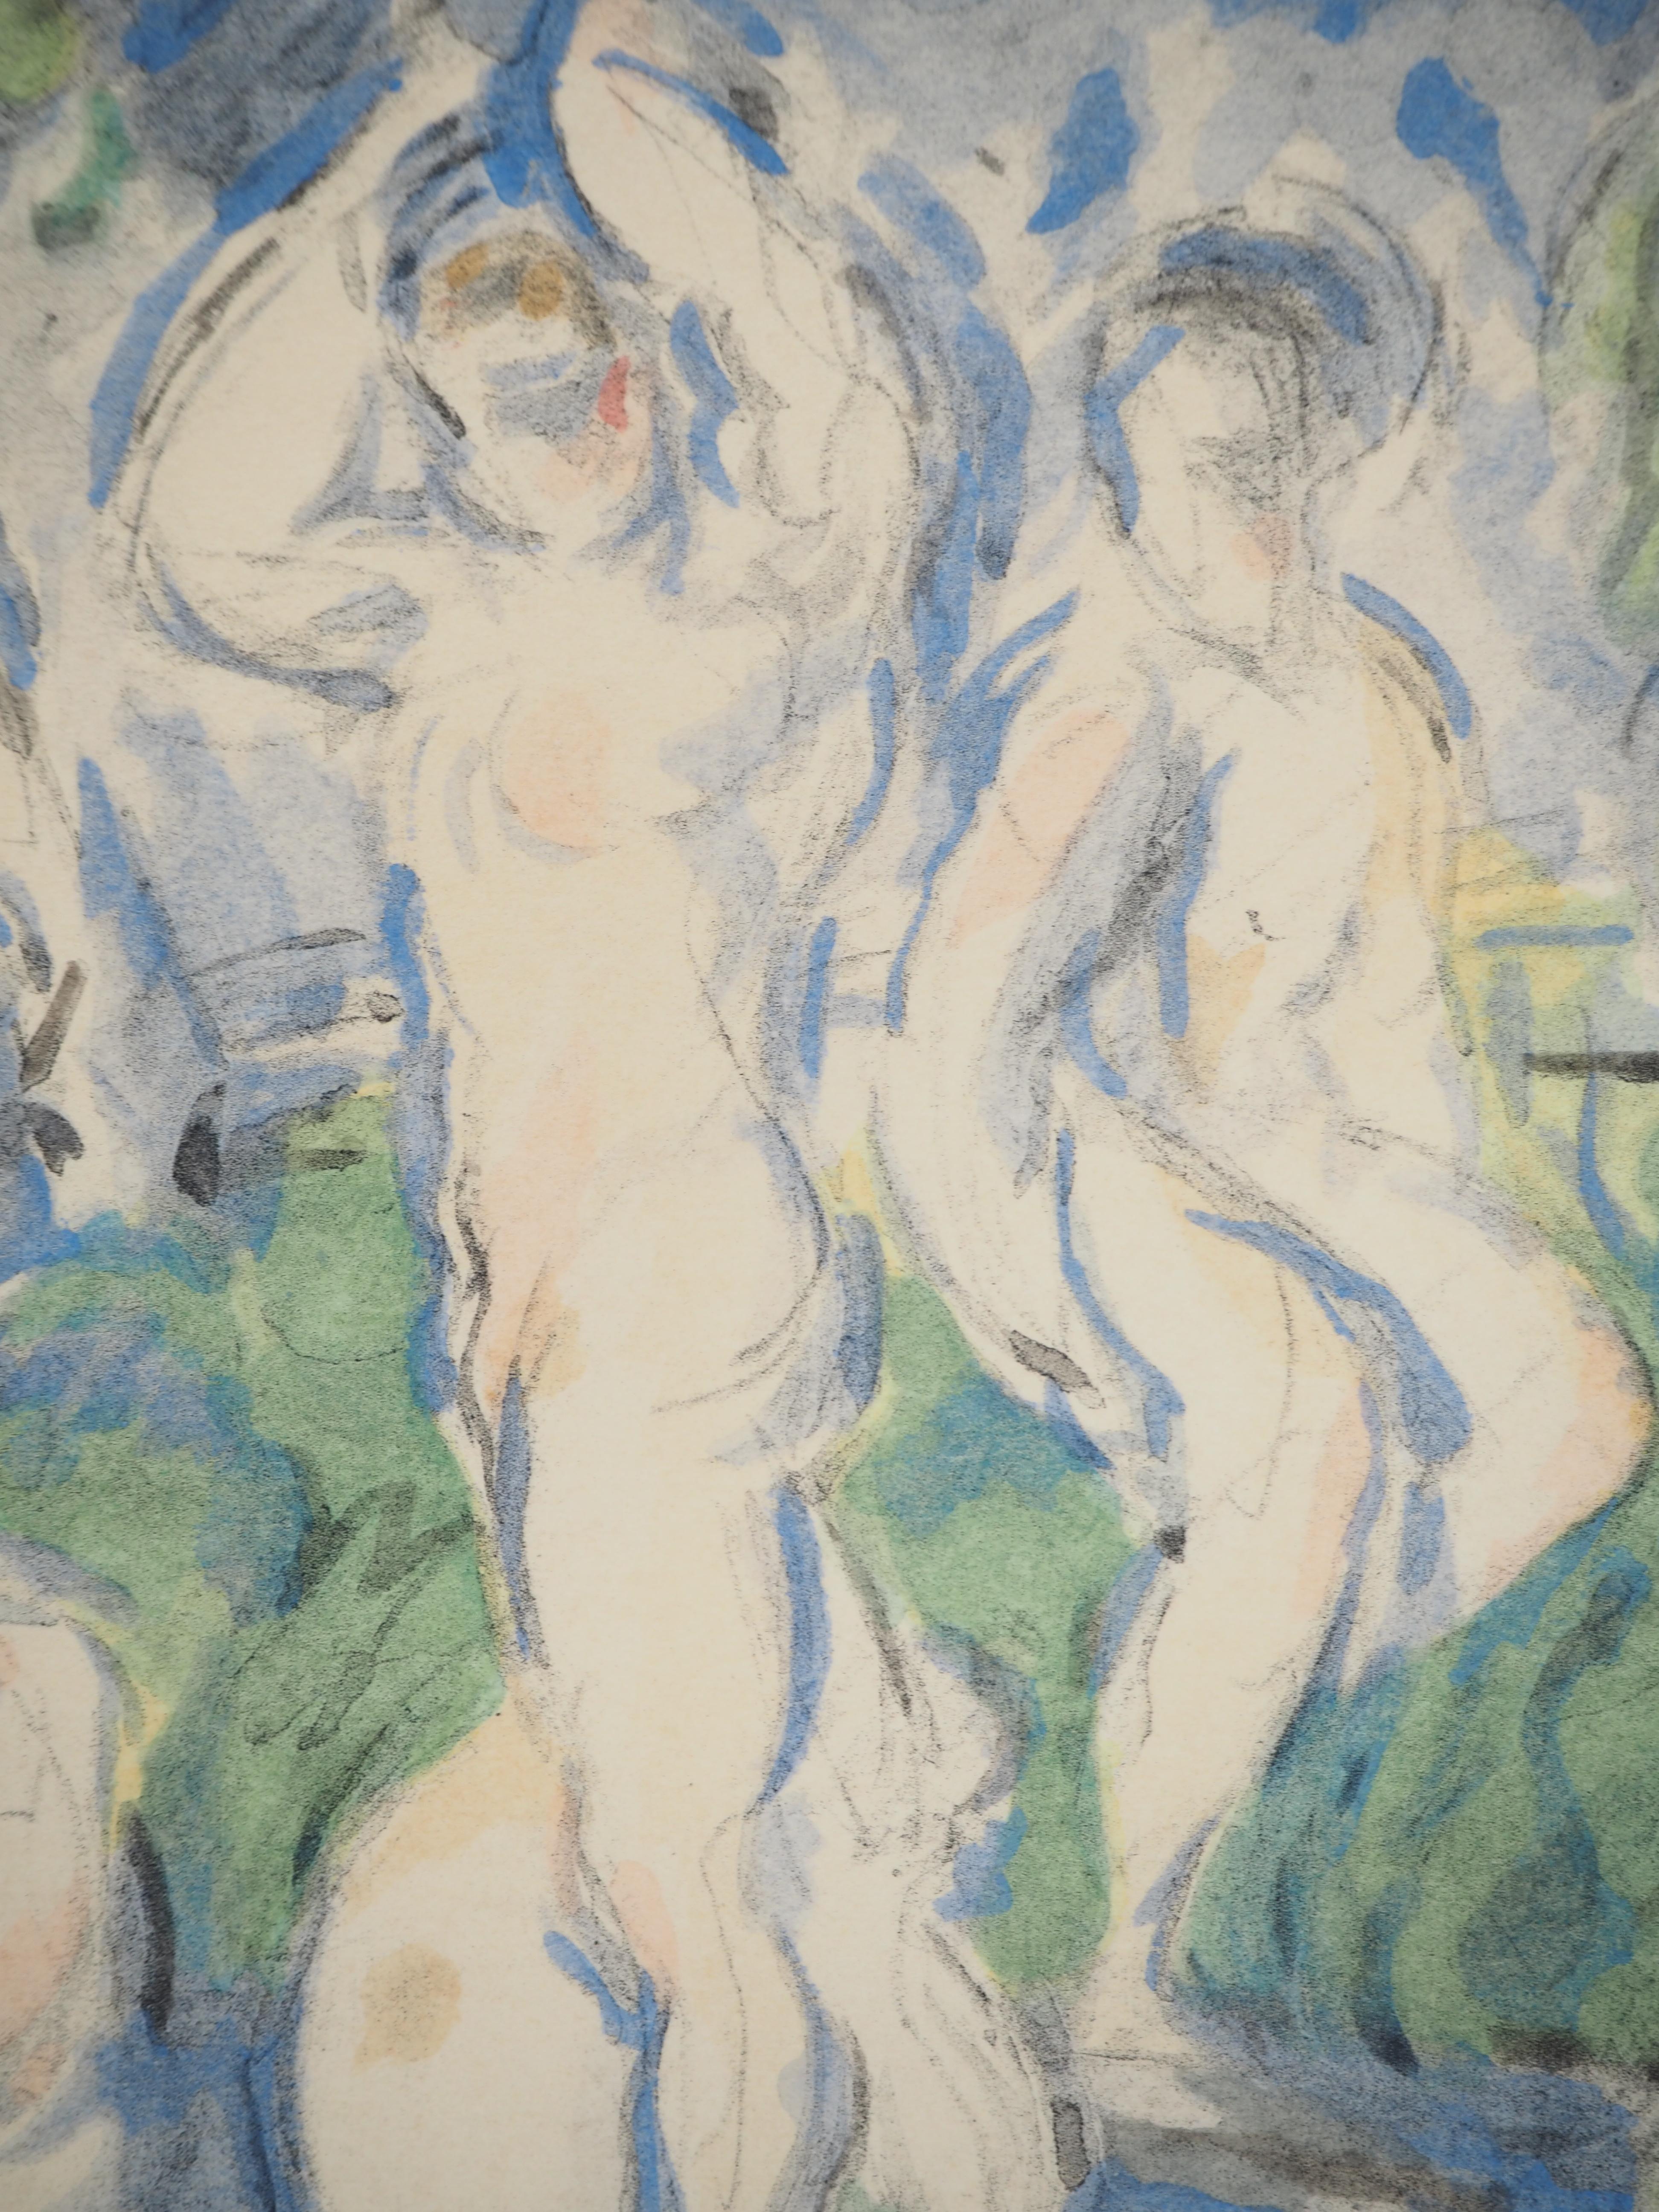 Paul Cezanne
Die Badenden in der Provence, 1971

Lithographie und Schablone (Werkstatt Jacomet)
Vorzeichenlos
Nummeriert / 225
Auf Papier, aufgetragen auf Arches Vellum 53,5 x 41,5 cm (ca. 21 x 16,5 Zoll)
Bildgröße: 20 x 25 cm (ca. 8 x 10